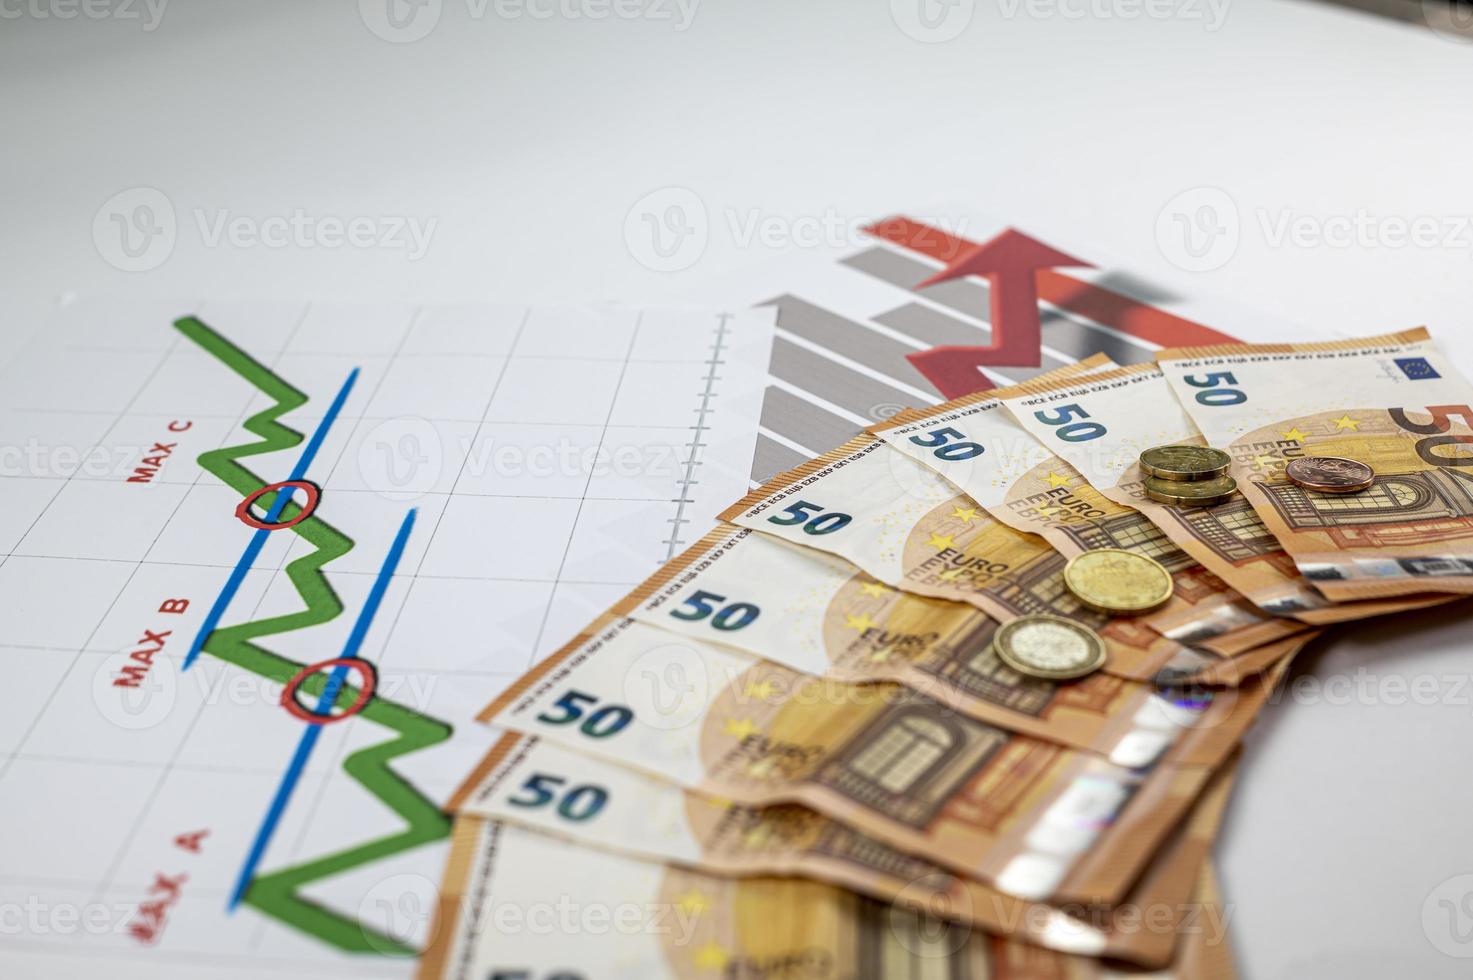 50 Euro-Banknoten, Münzen und Statistiken auf weißem Hintergrund foto